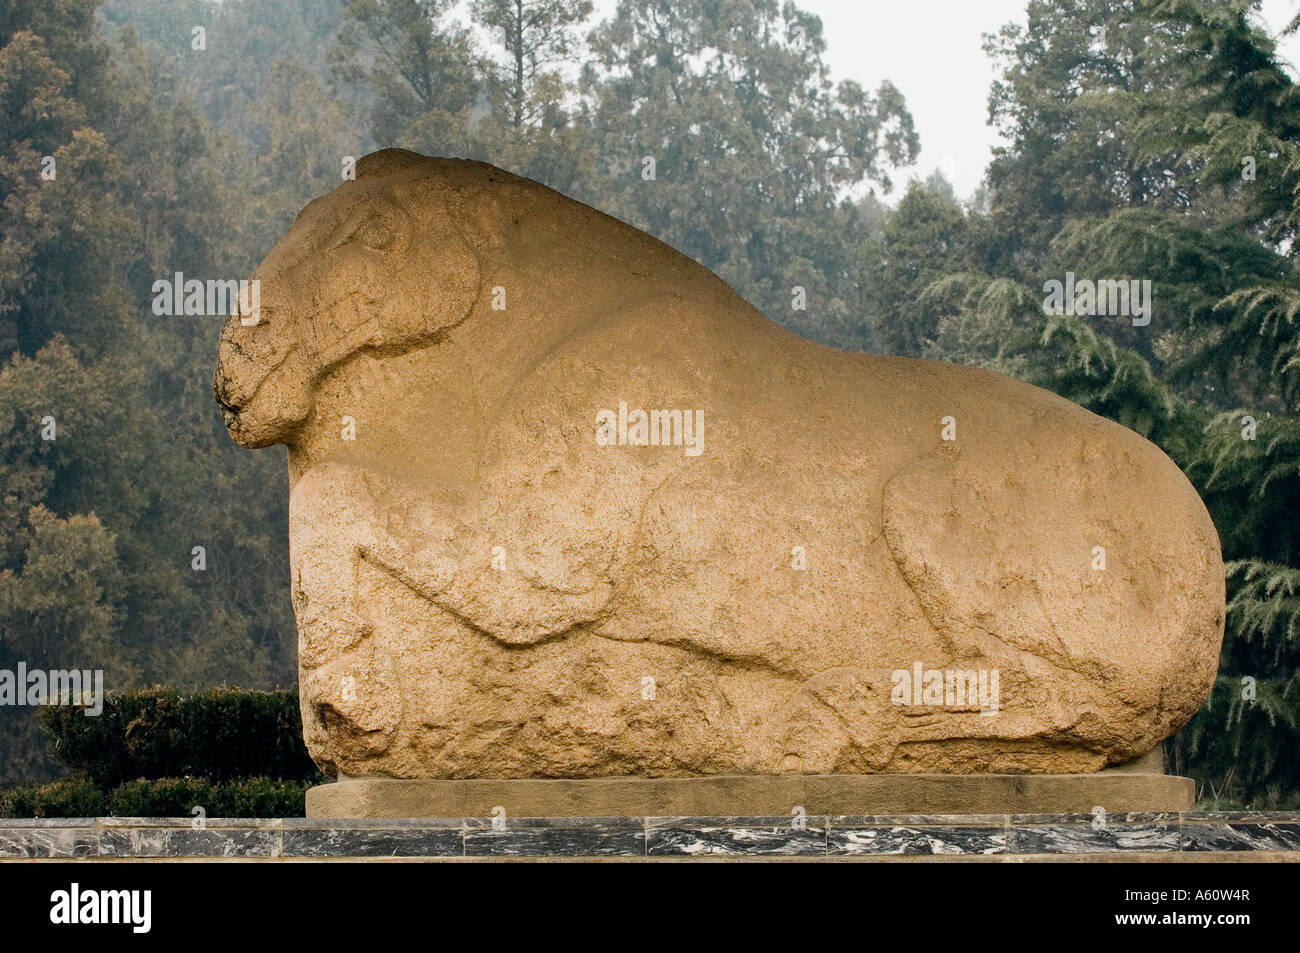 Mausolée Maoling près de Xi'an, province du Shaanxi, en Chine. Ancienne sculpture de cheval au galop date de la dynastie des Han de l'Ouest Banque D'Images